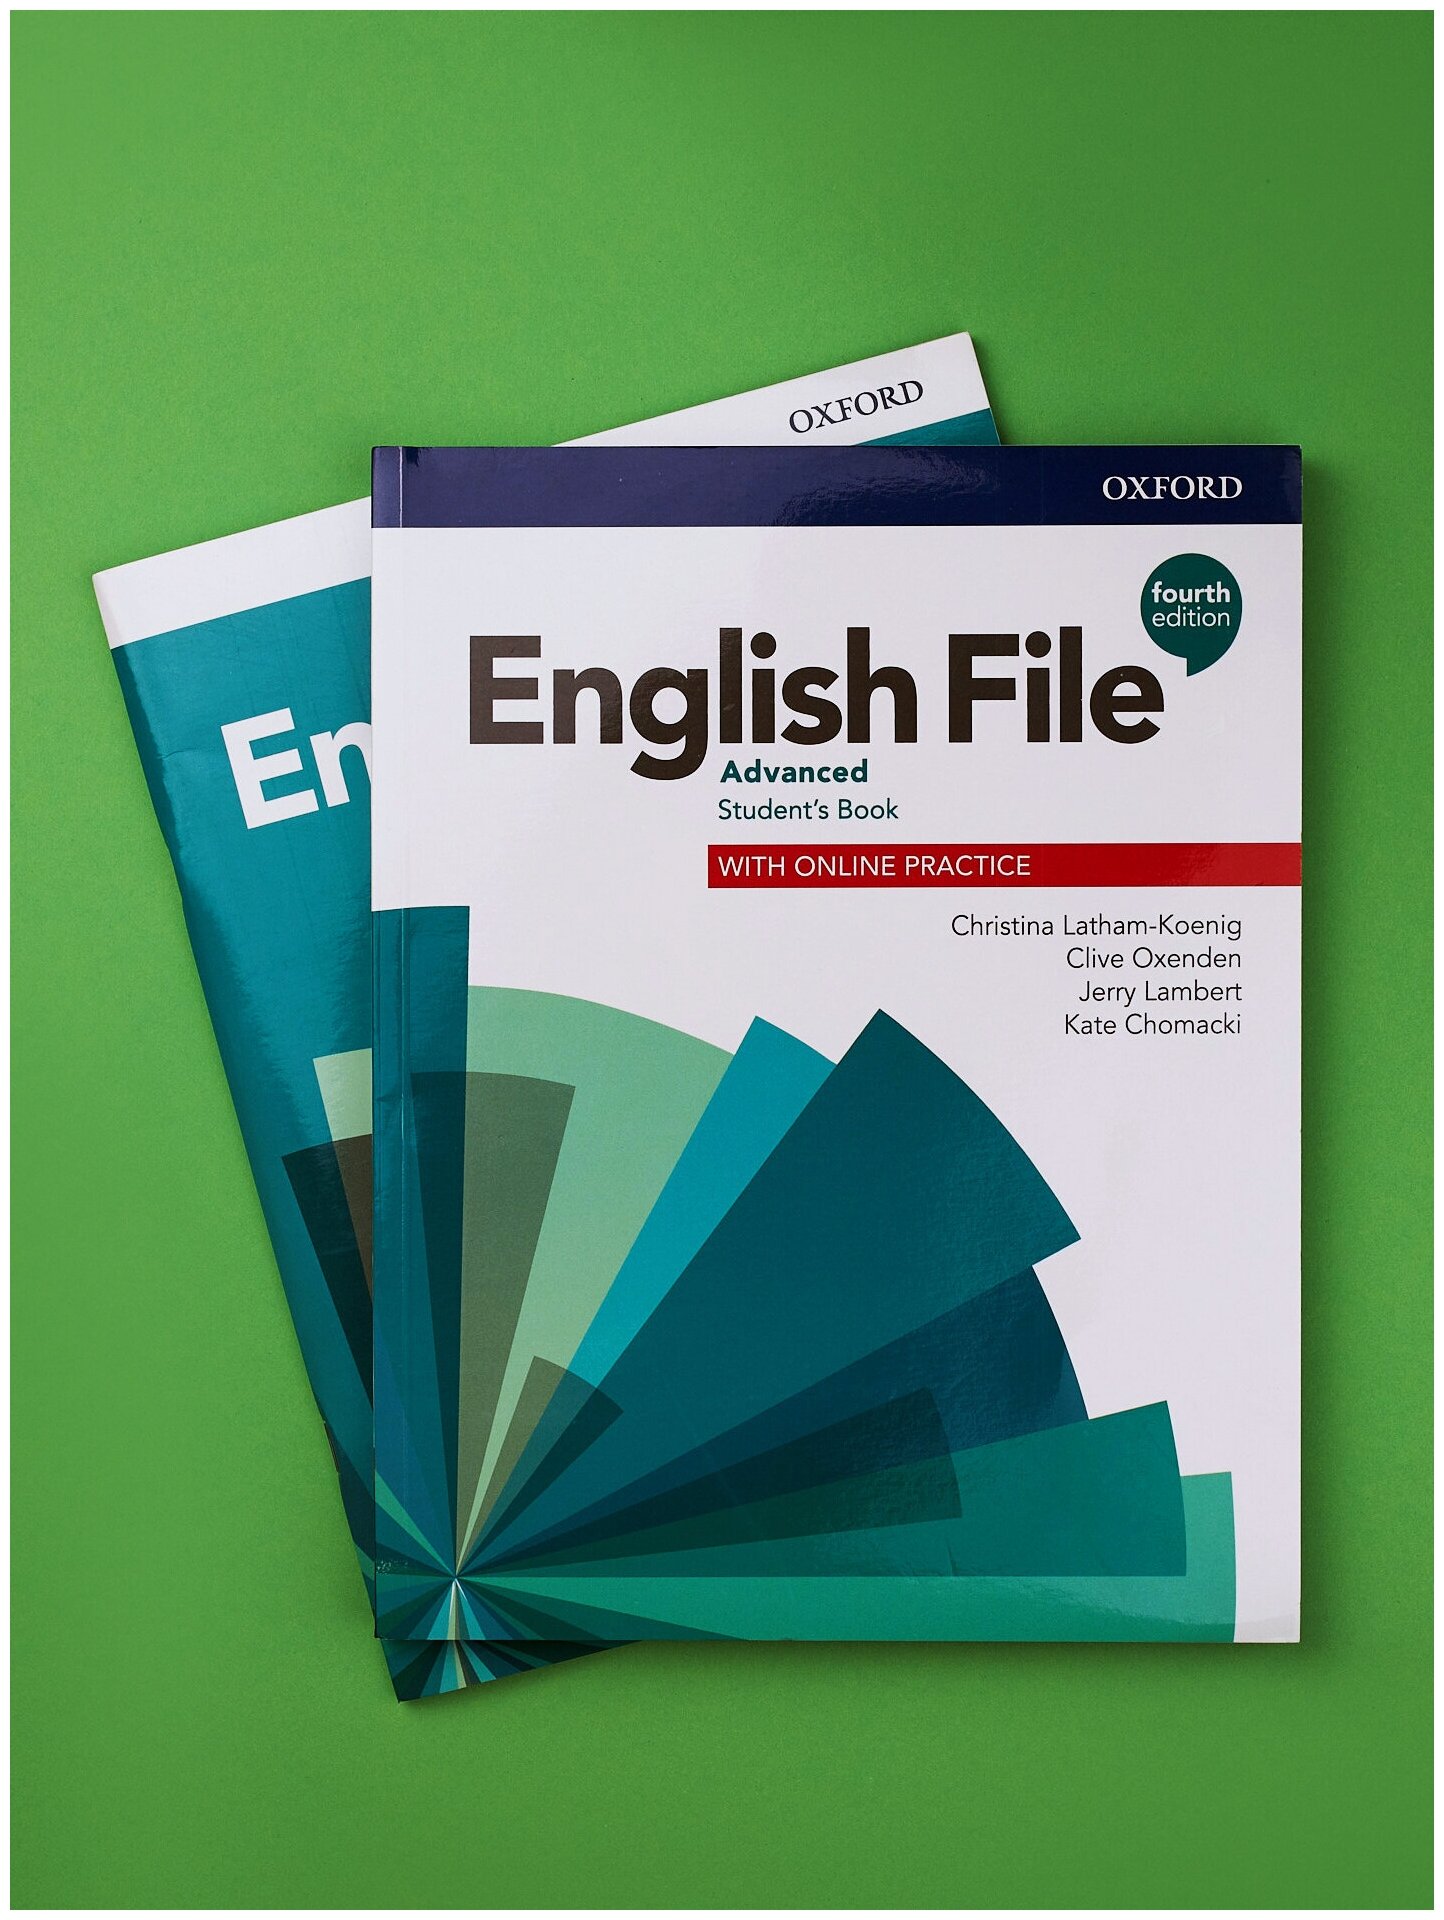 Книга English File Advanced 4 издание Комплект Student's book + Workbook для изучения английского языка